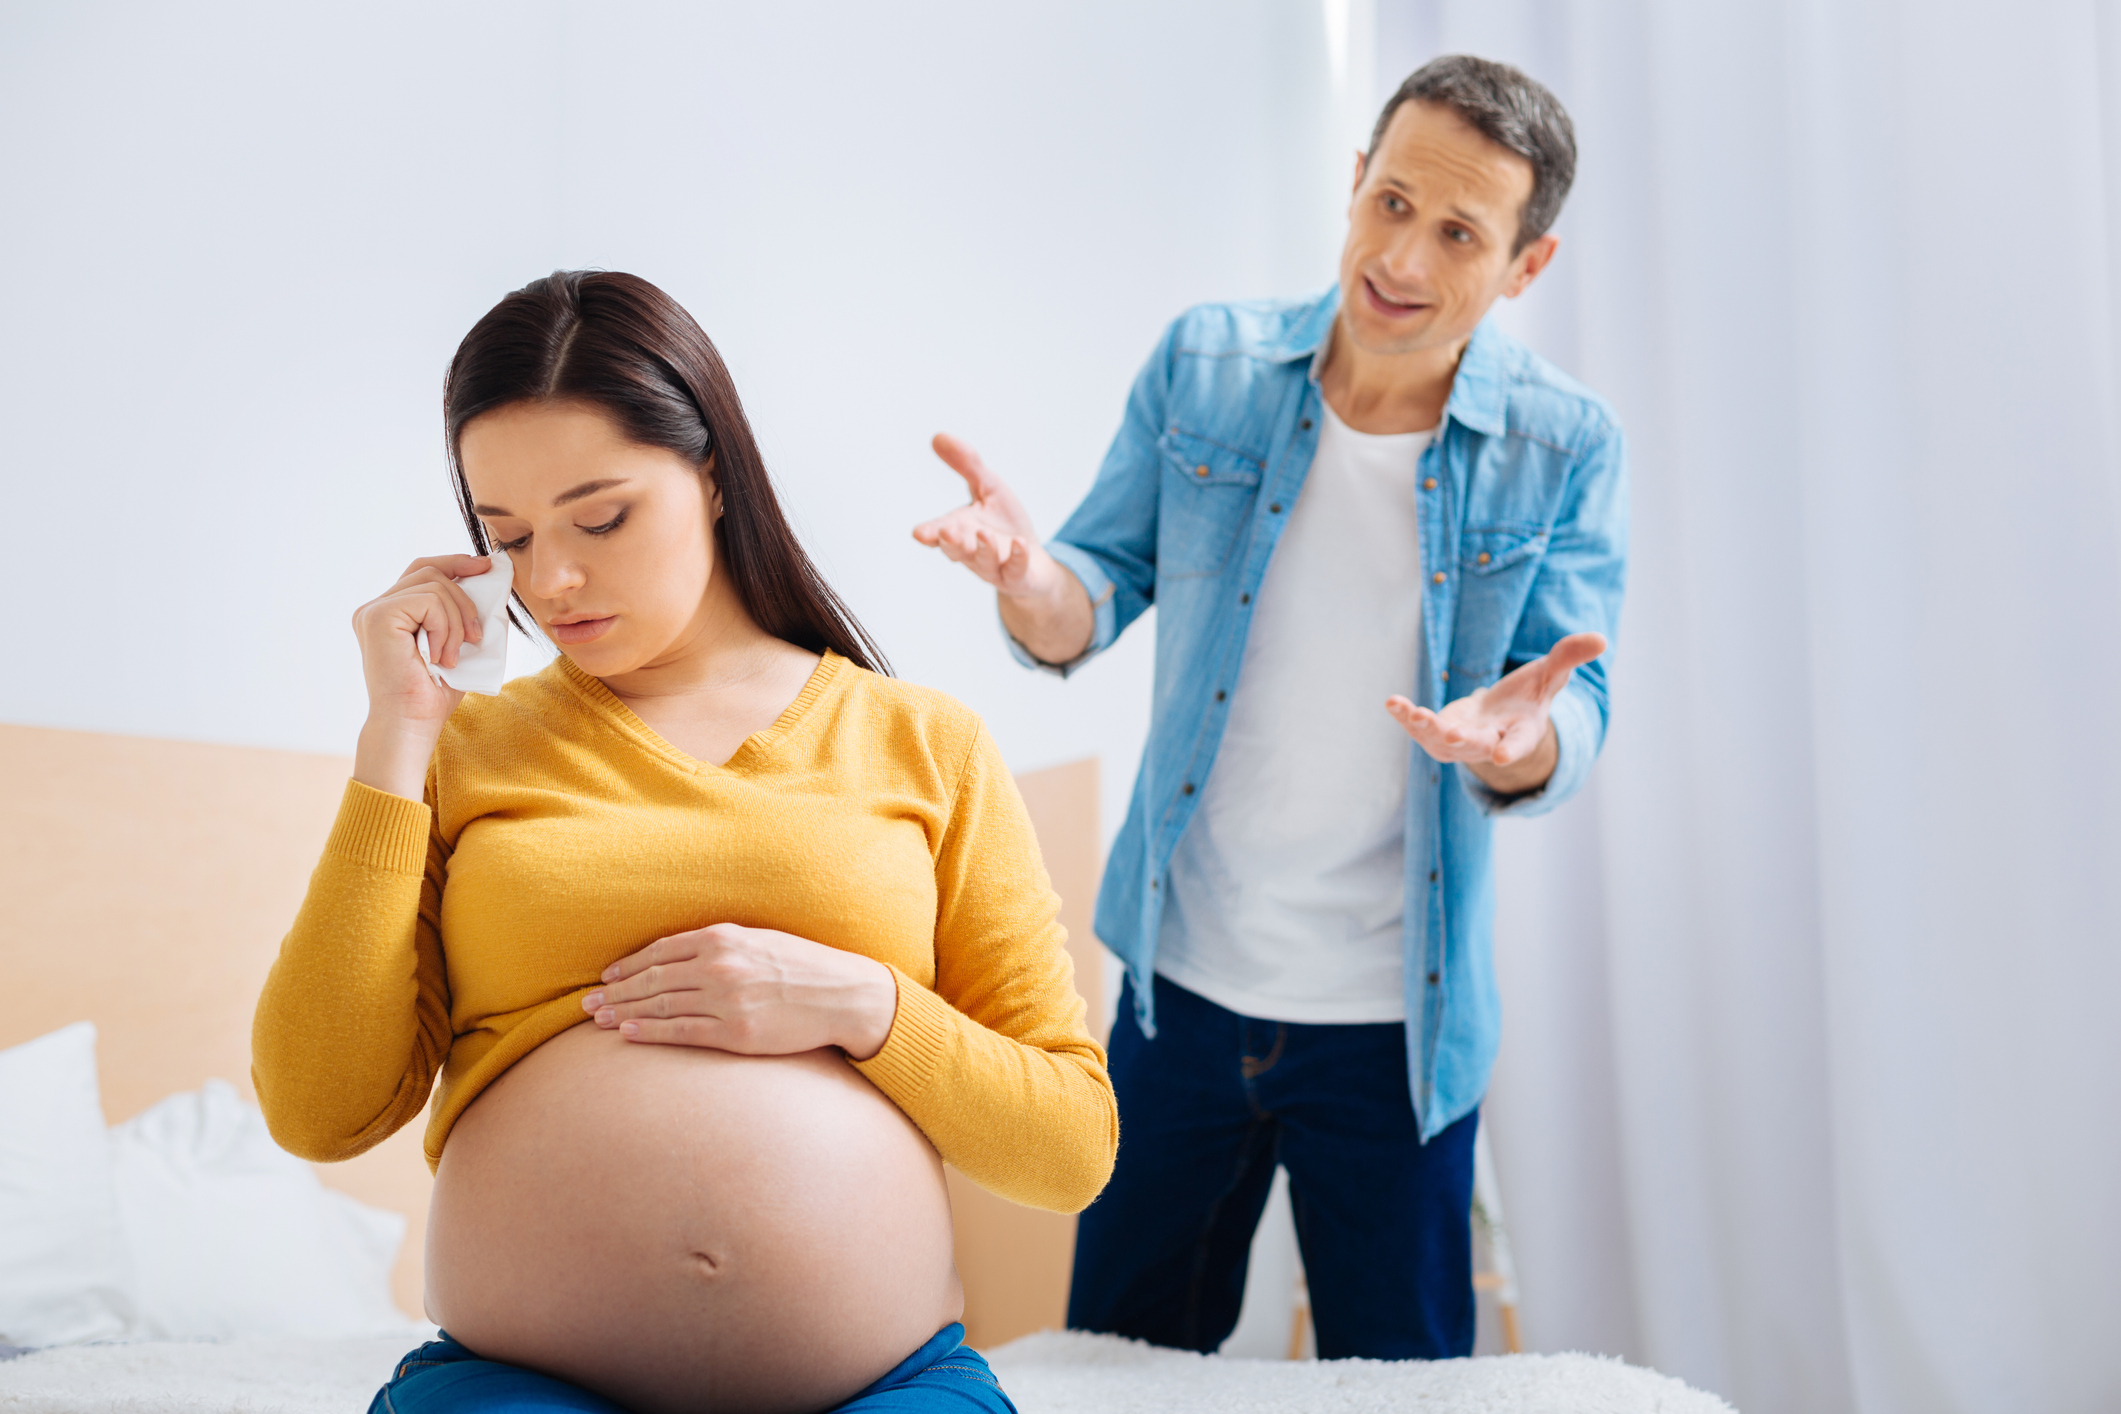 amateurwife wife wants baby